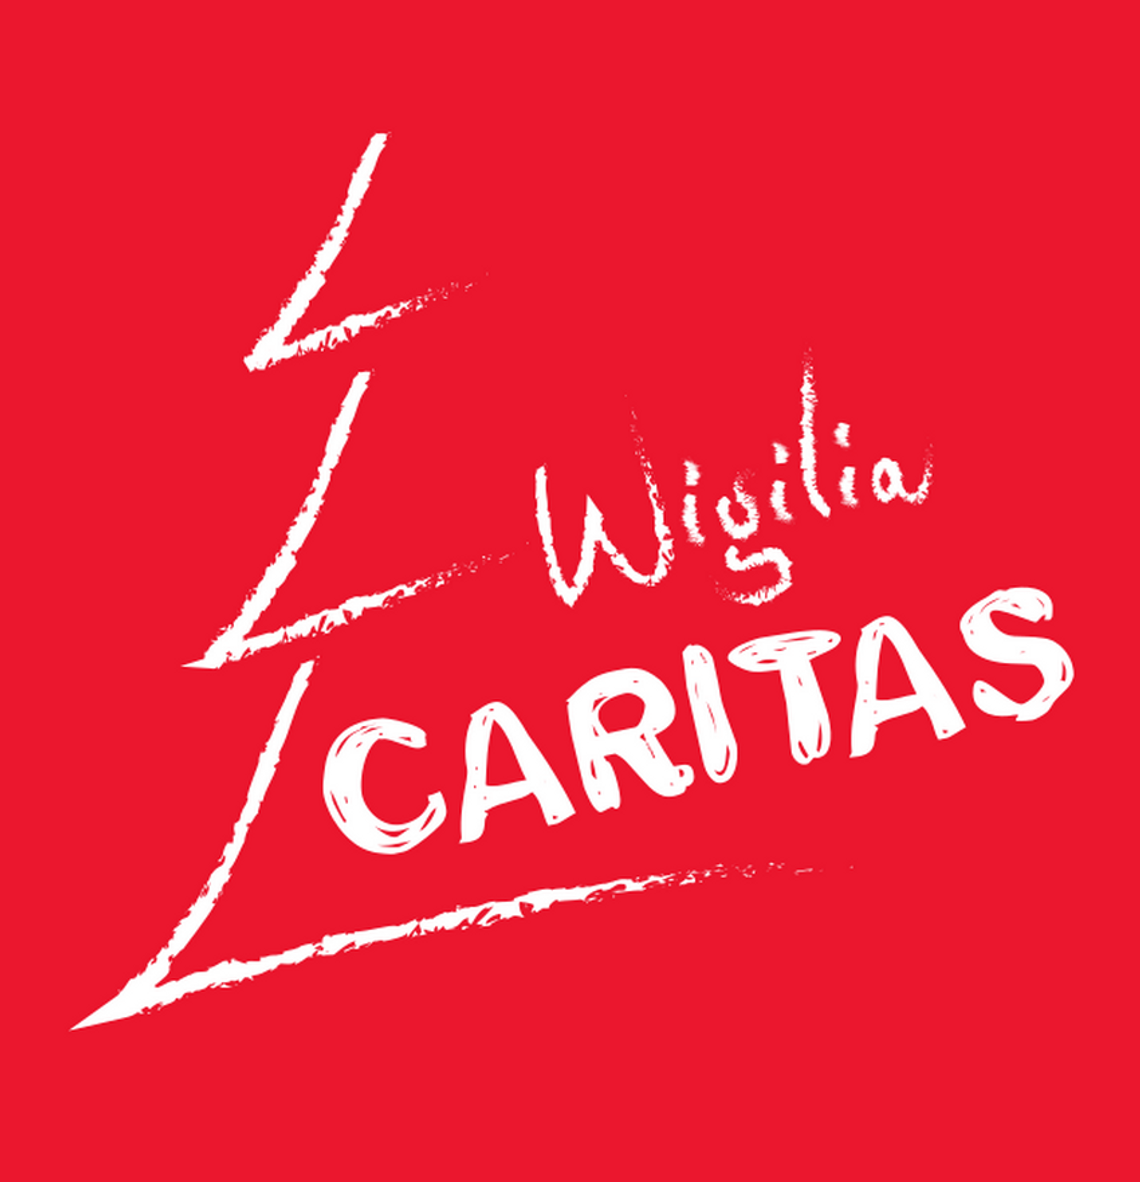 WIGILIA CARITAS